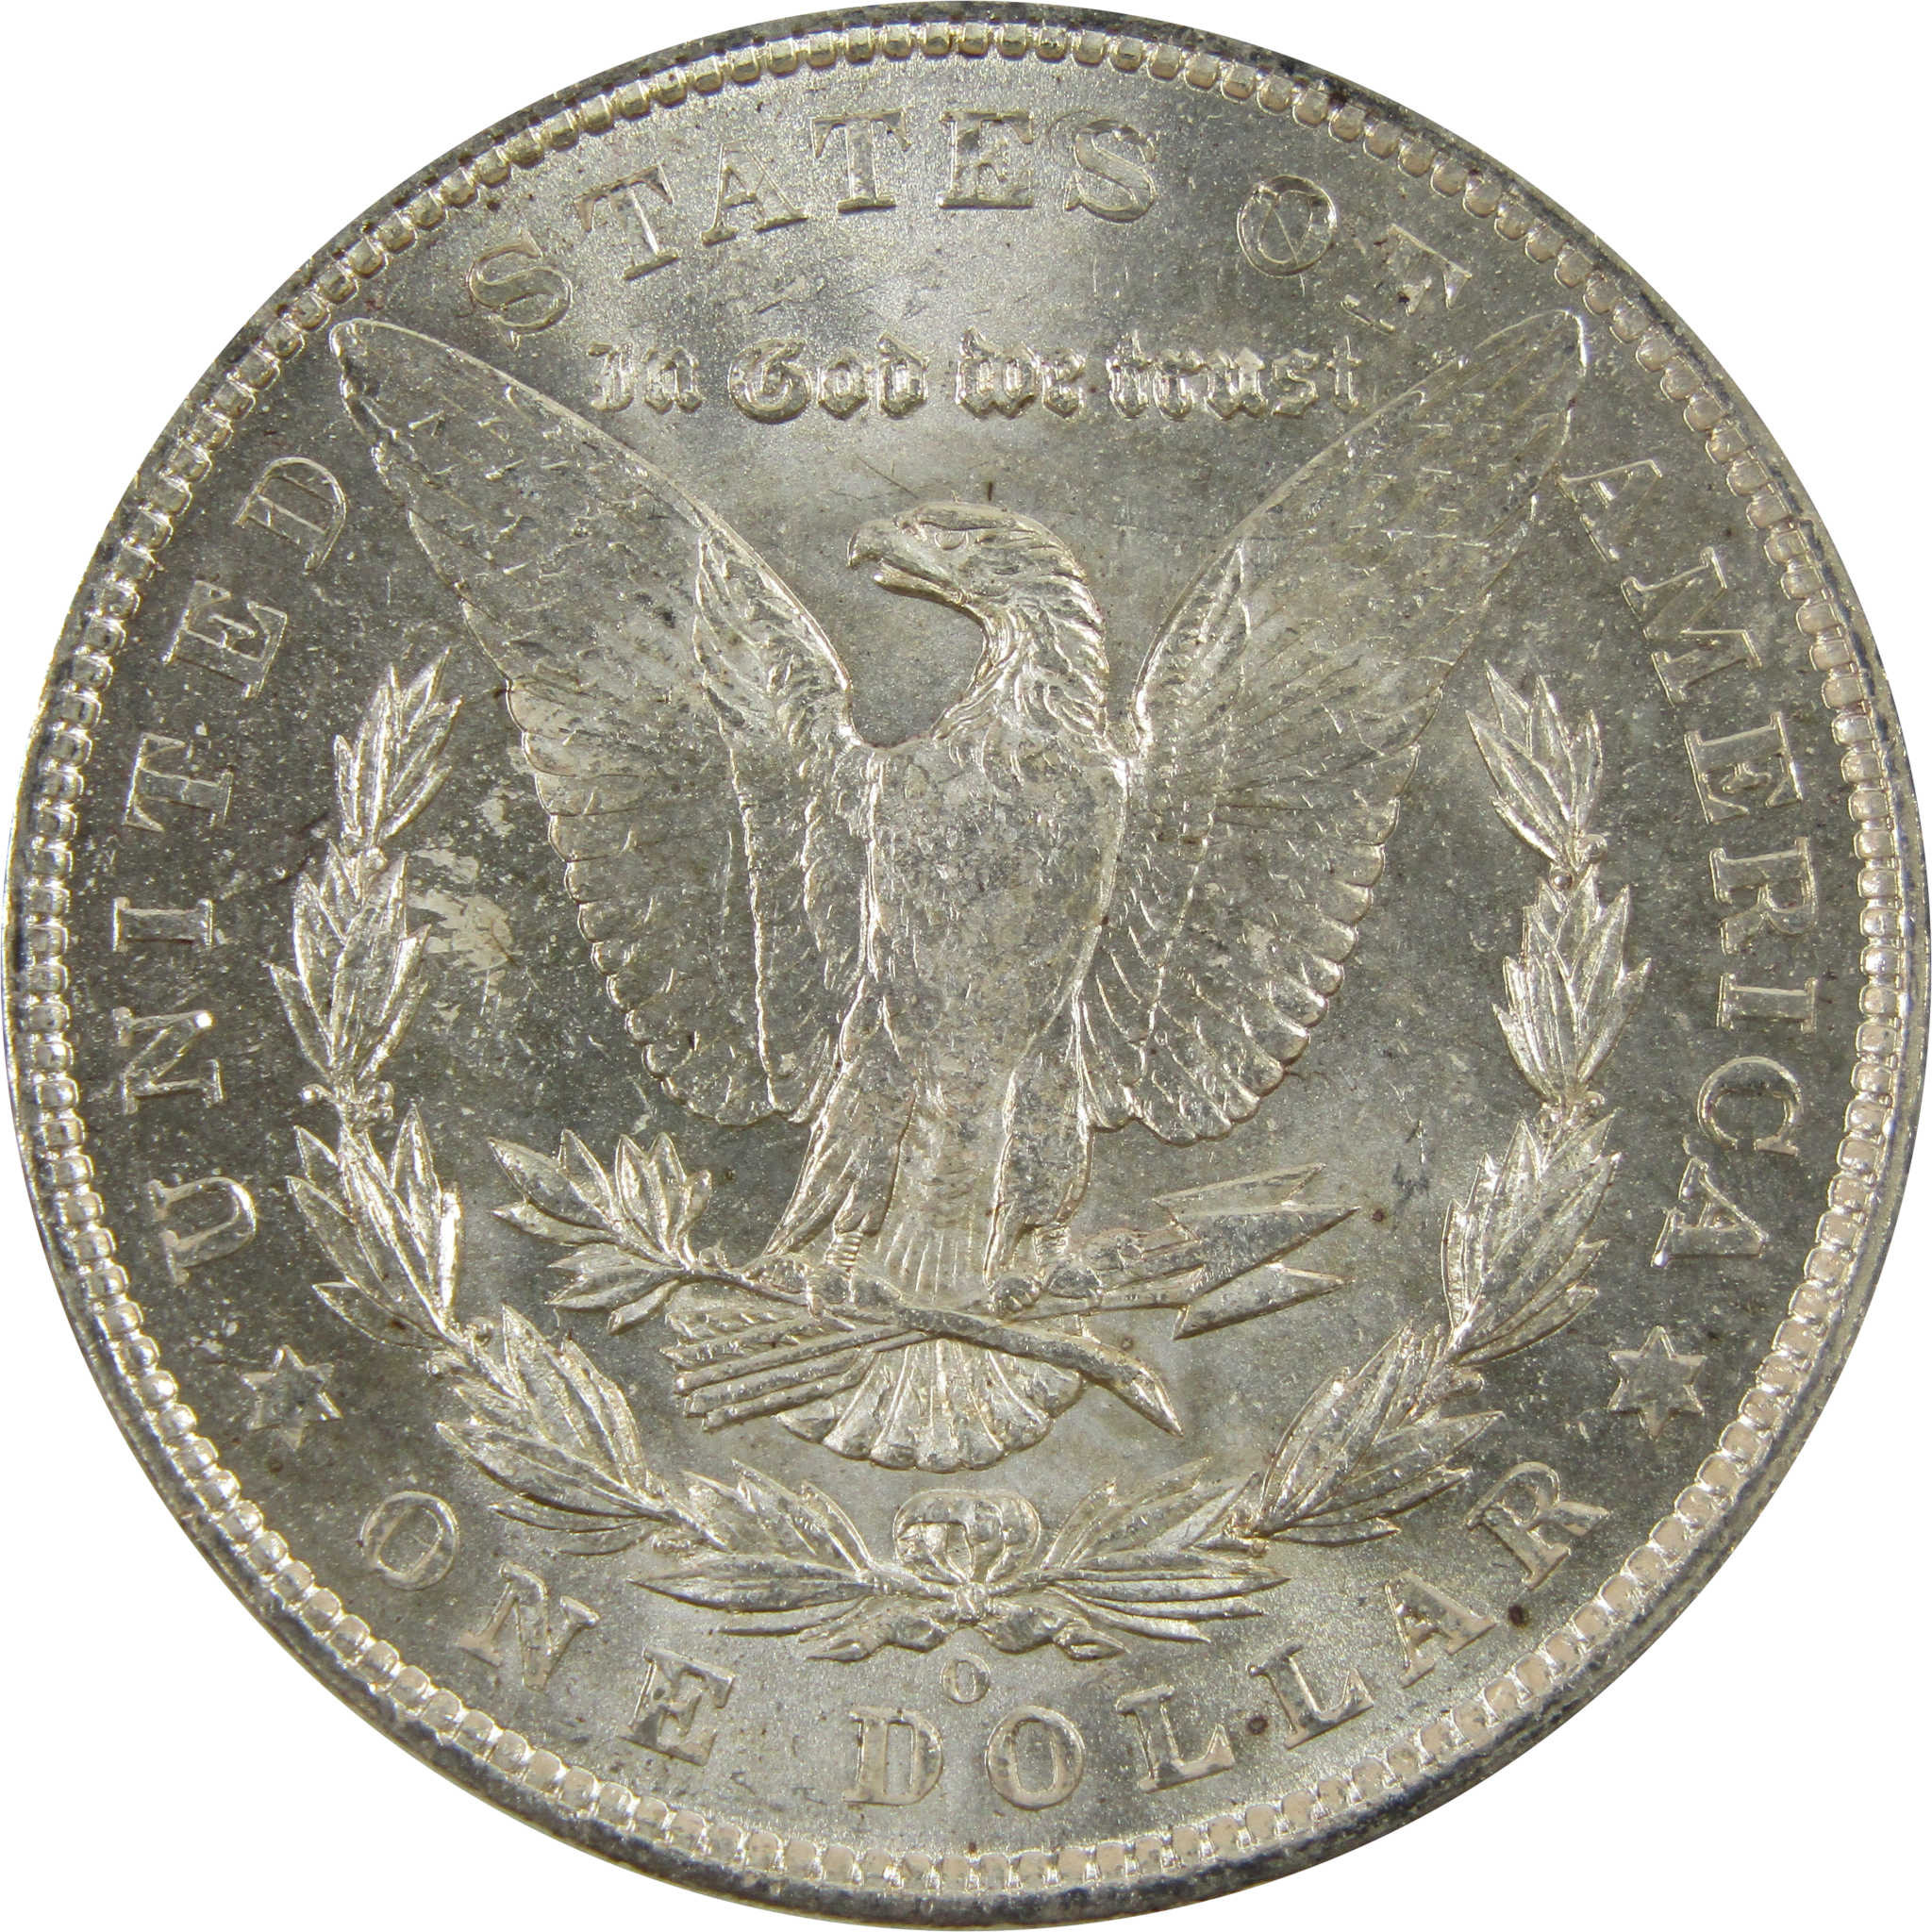 1904 O Morgan Dollar BU Uncirculated 90% Silver $1 Coin SKU:I5227 - Morgan coin - Morgan silver dollar - Morgan silver dollar for sale - Profile Coins &amp; Collectibles